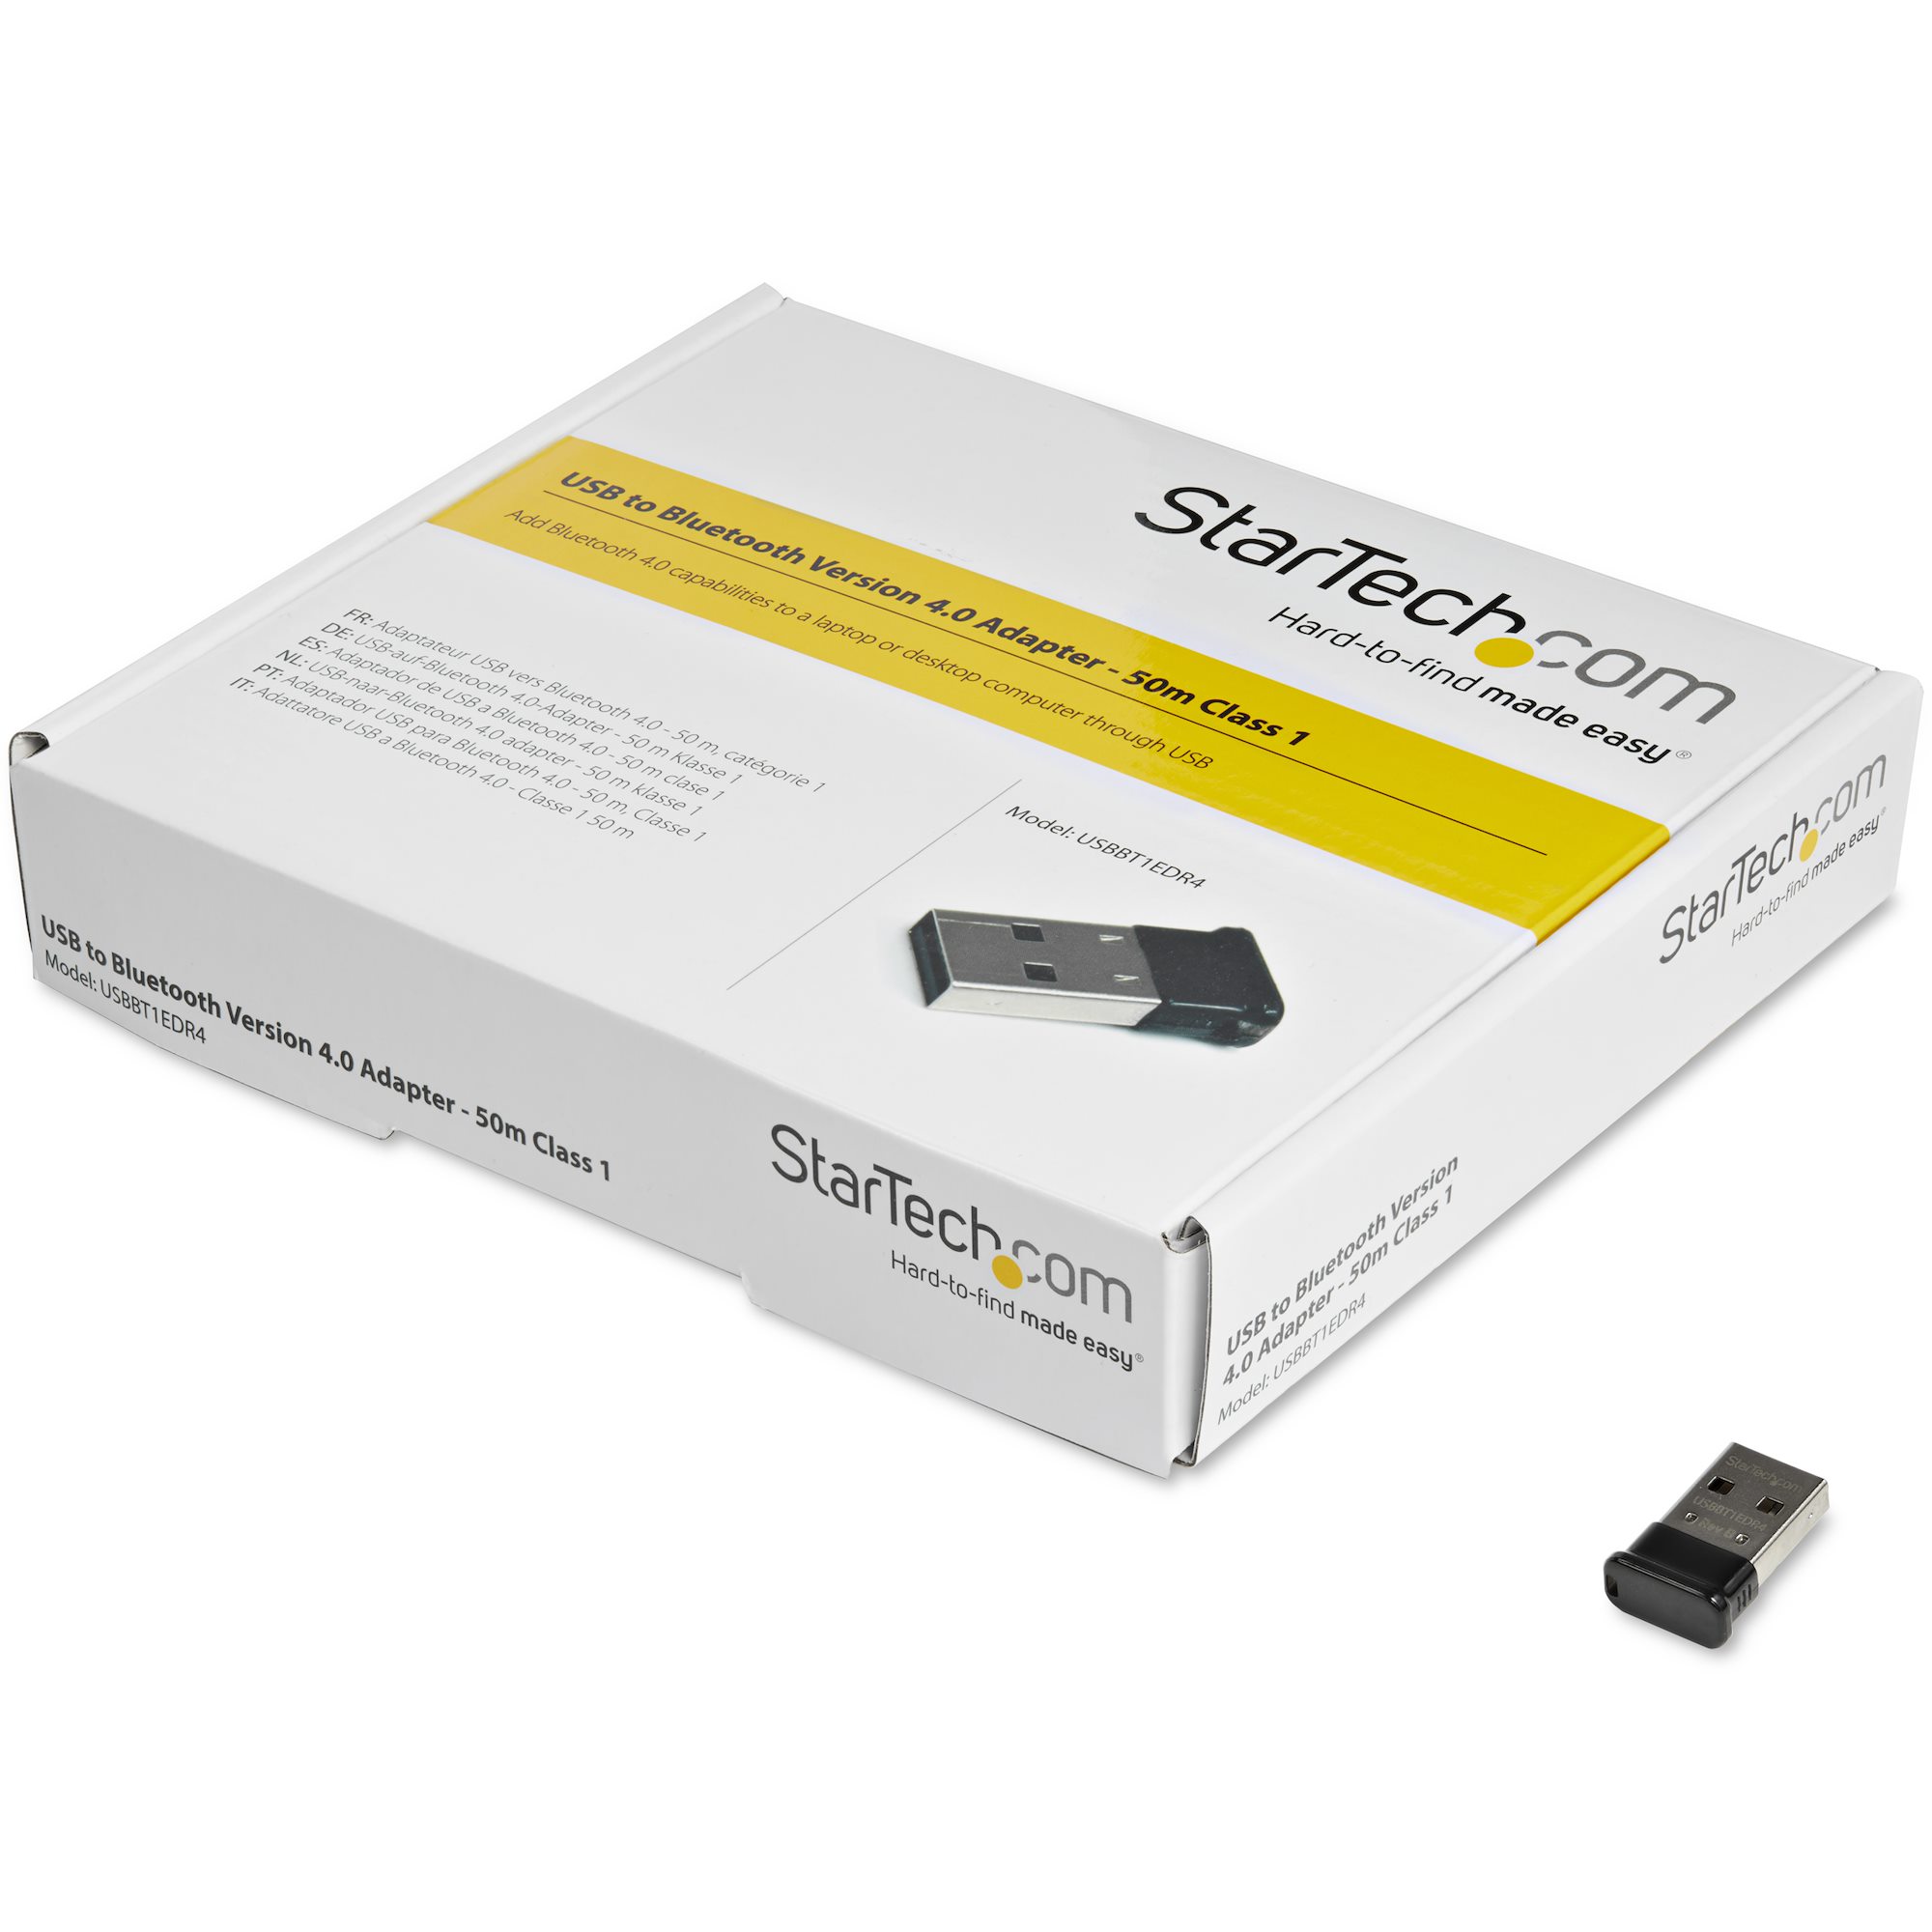 Redelijk vaas Gewoon overlopen USB Bluetooth 4.0 Adapter - 10m Class 2 - Bluetooth & Telecom Adapters |  StarTech.com